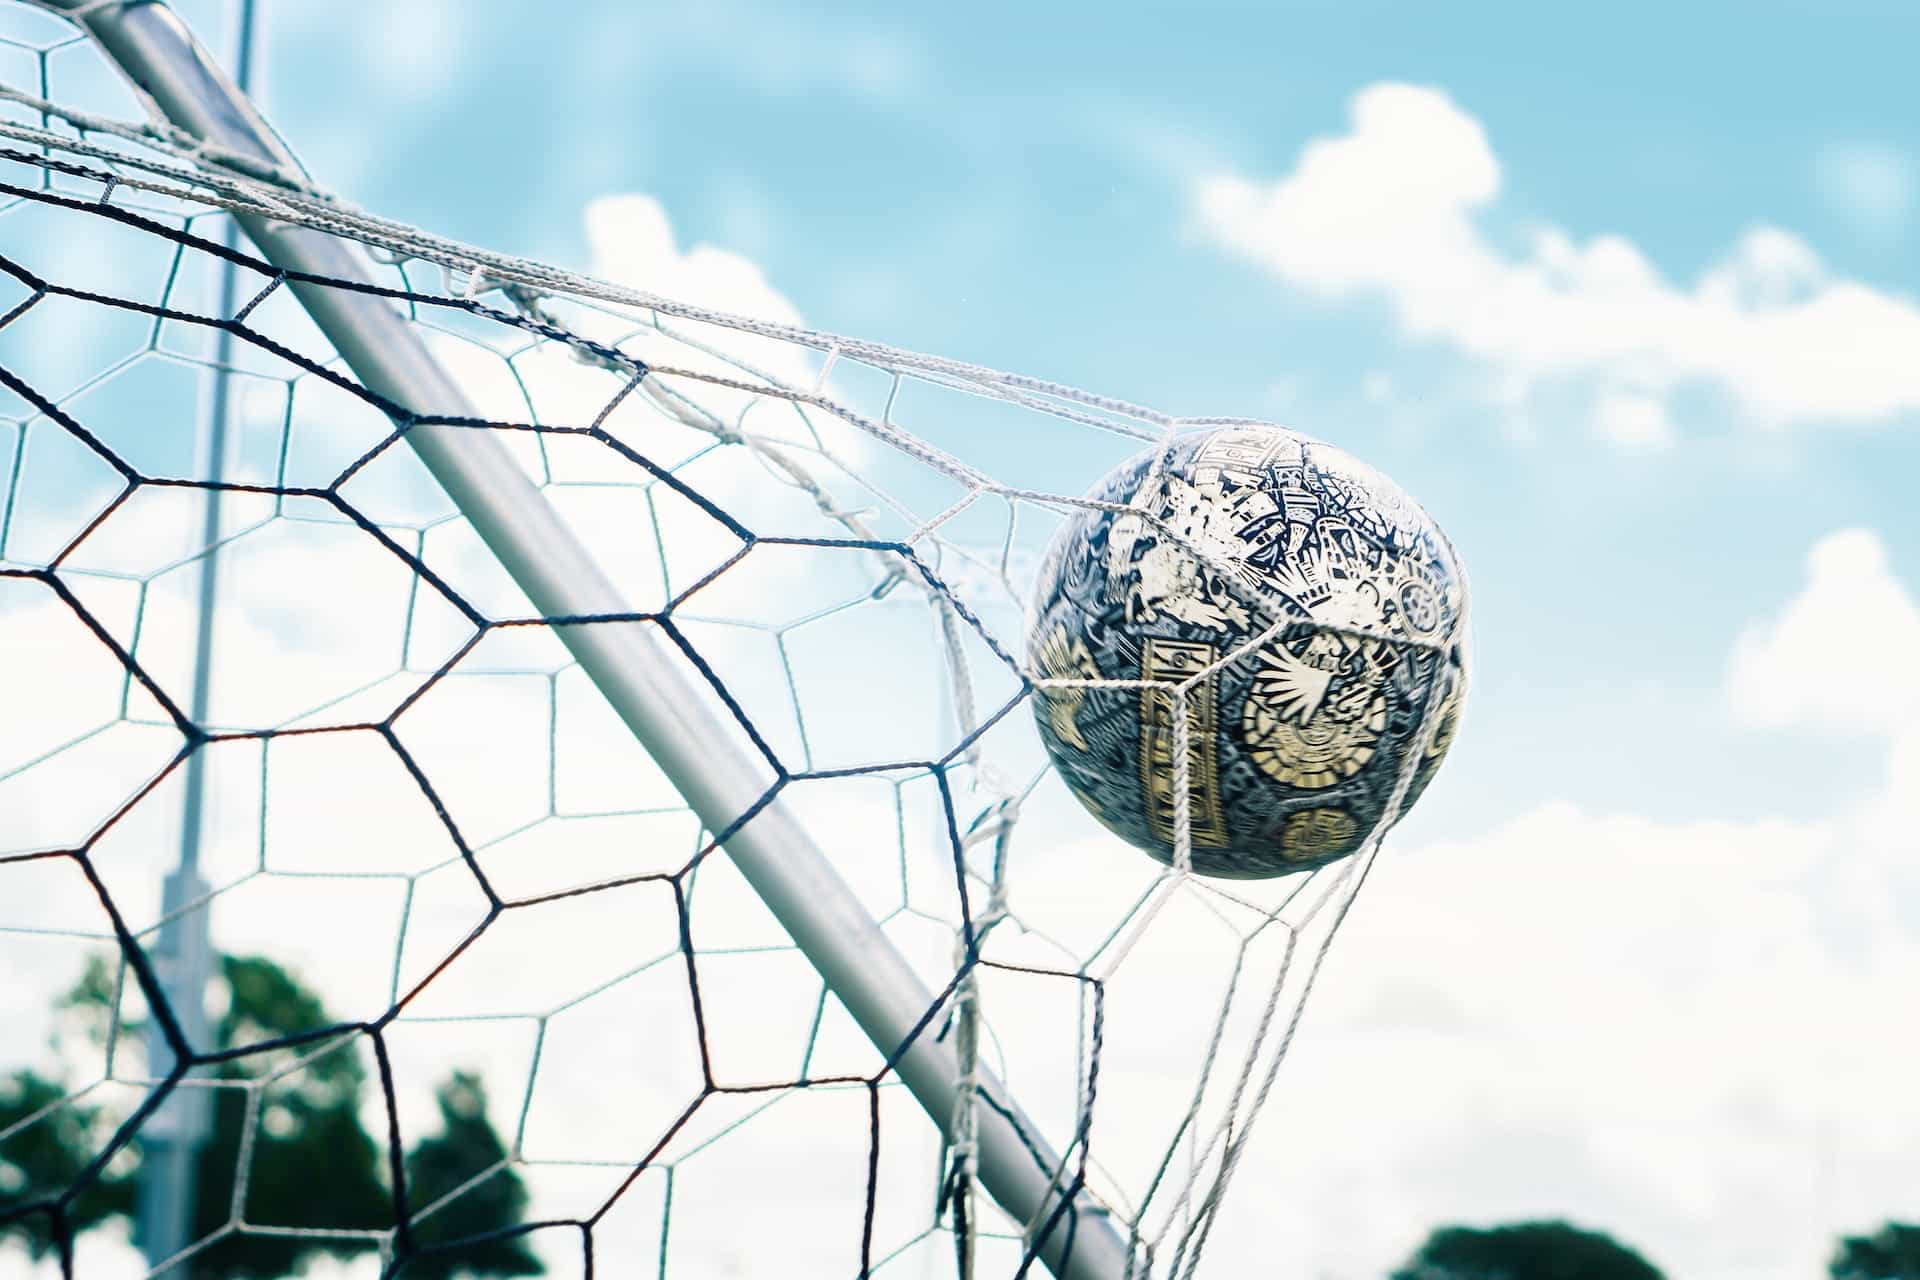 A soccer ball going into a goal net.